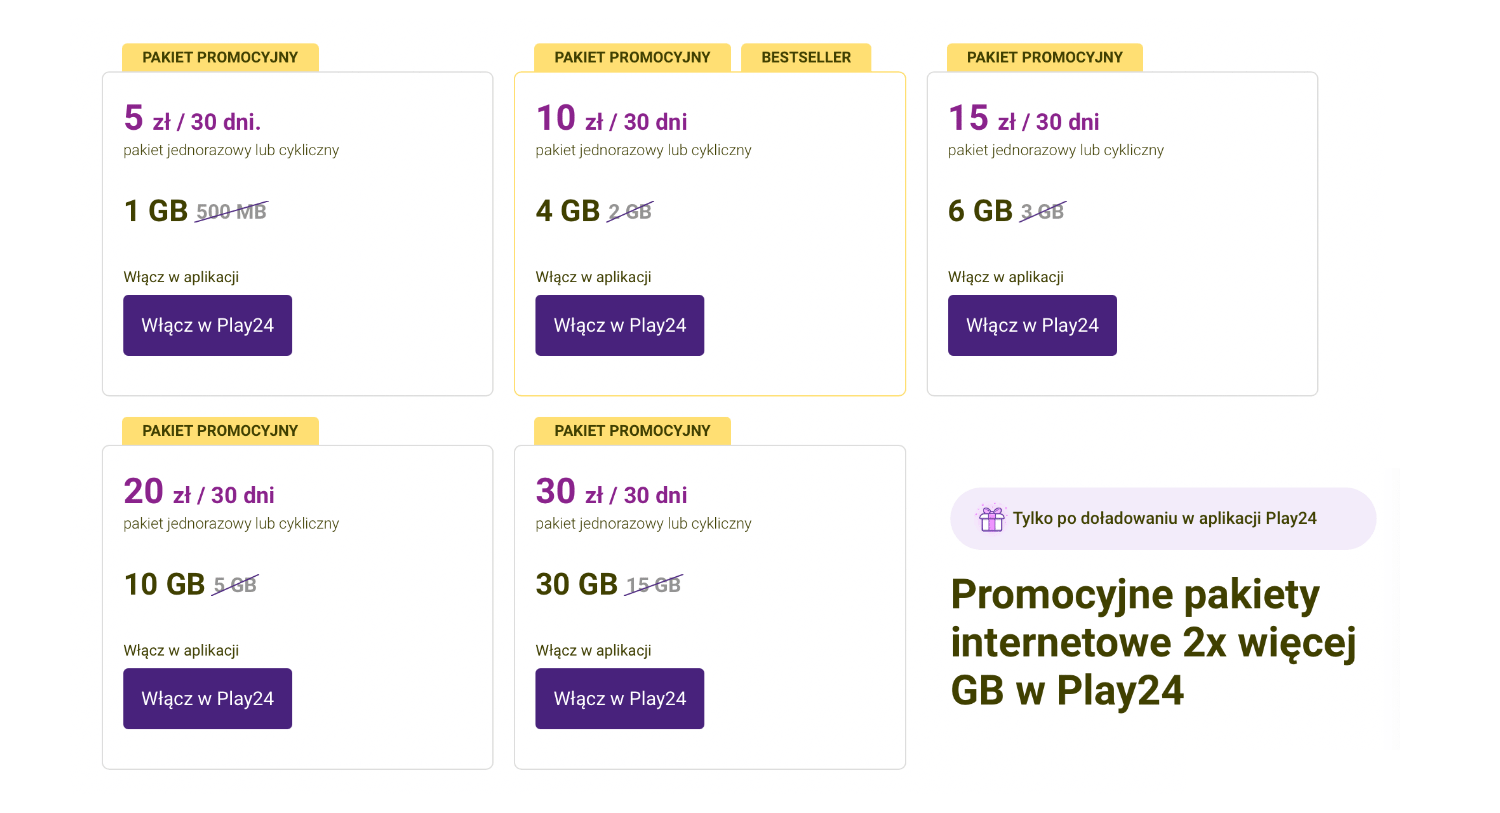 Promocyjne pakiety internetowe 2x więcej GB w Play24